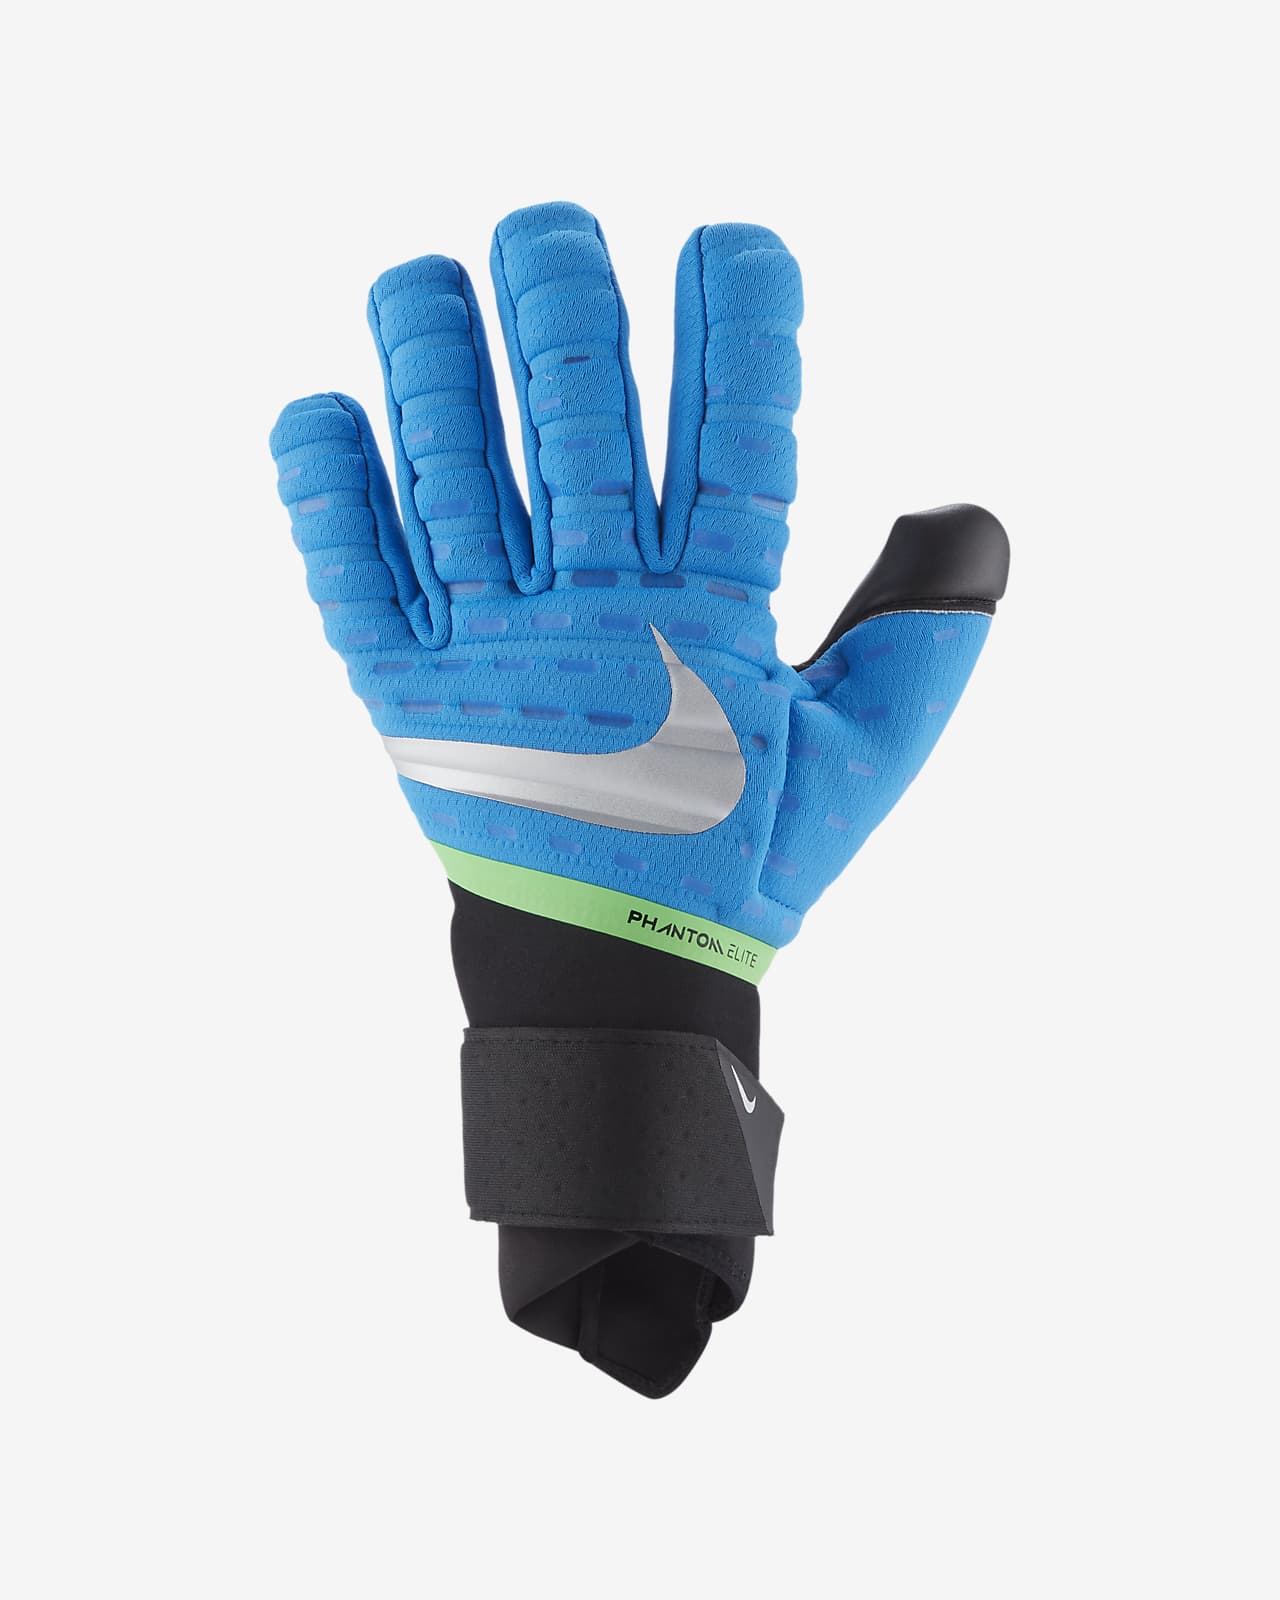 nike phantom elite gloves